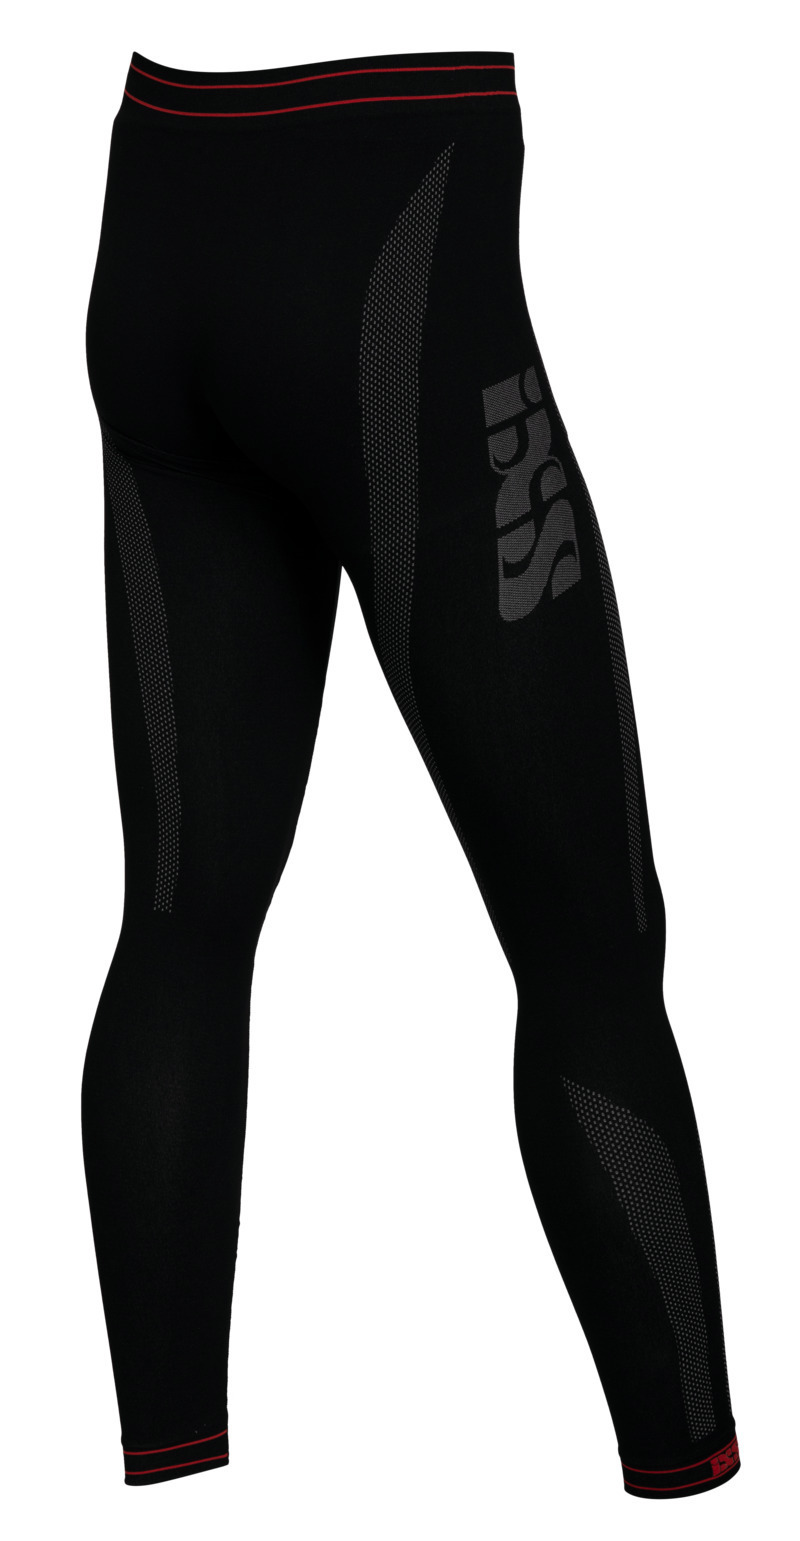 Obrázek produktu Kalhoty spodní vrstva iXS iXS365 X33011 černo-šedá M/L X33011-039-M/L